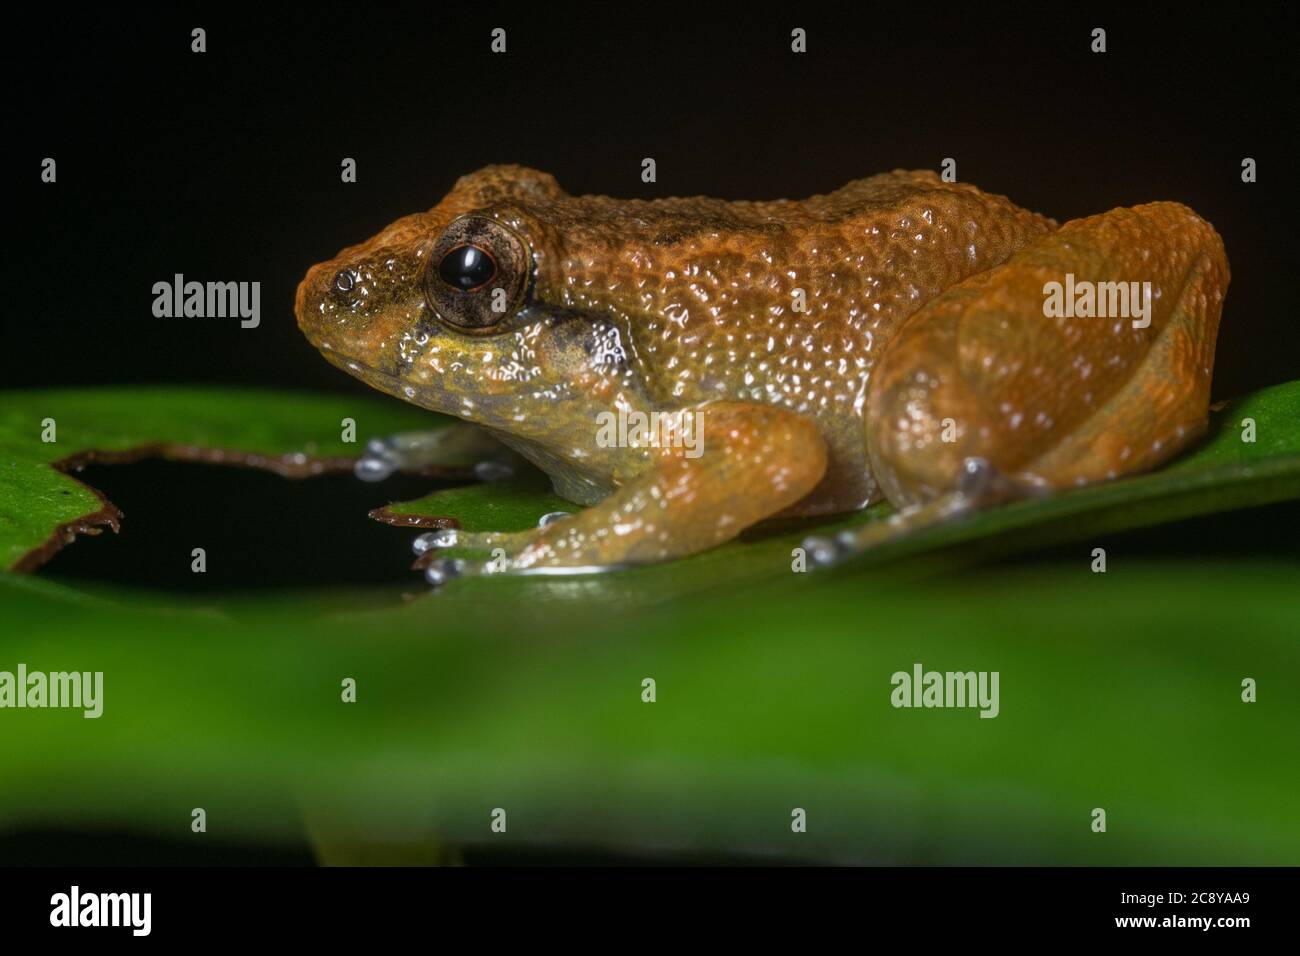 Alcalus baluensis ex Ingerana, la rana nana è una specie minuscola endemica del Borneo nord-orientale nel sud-est asiatico. Foto Stock